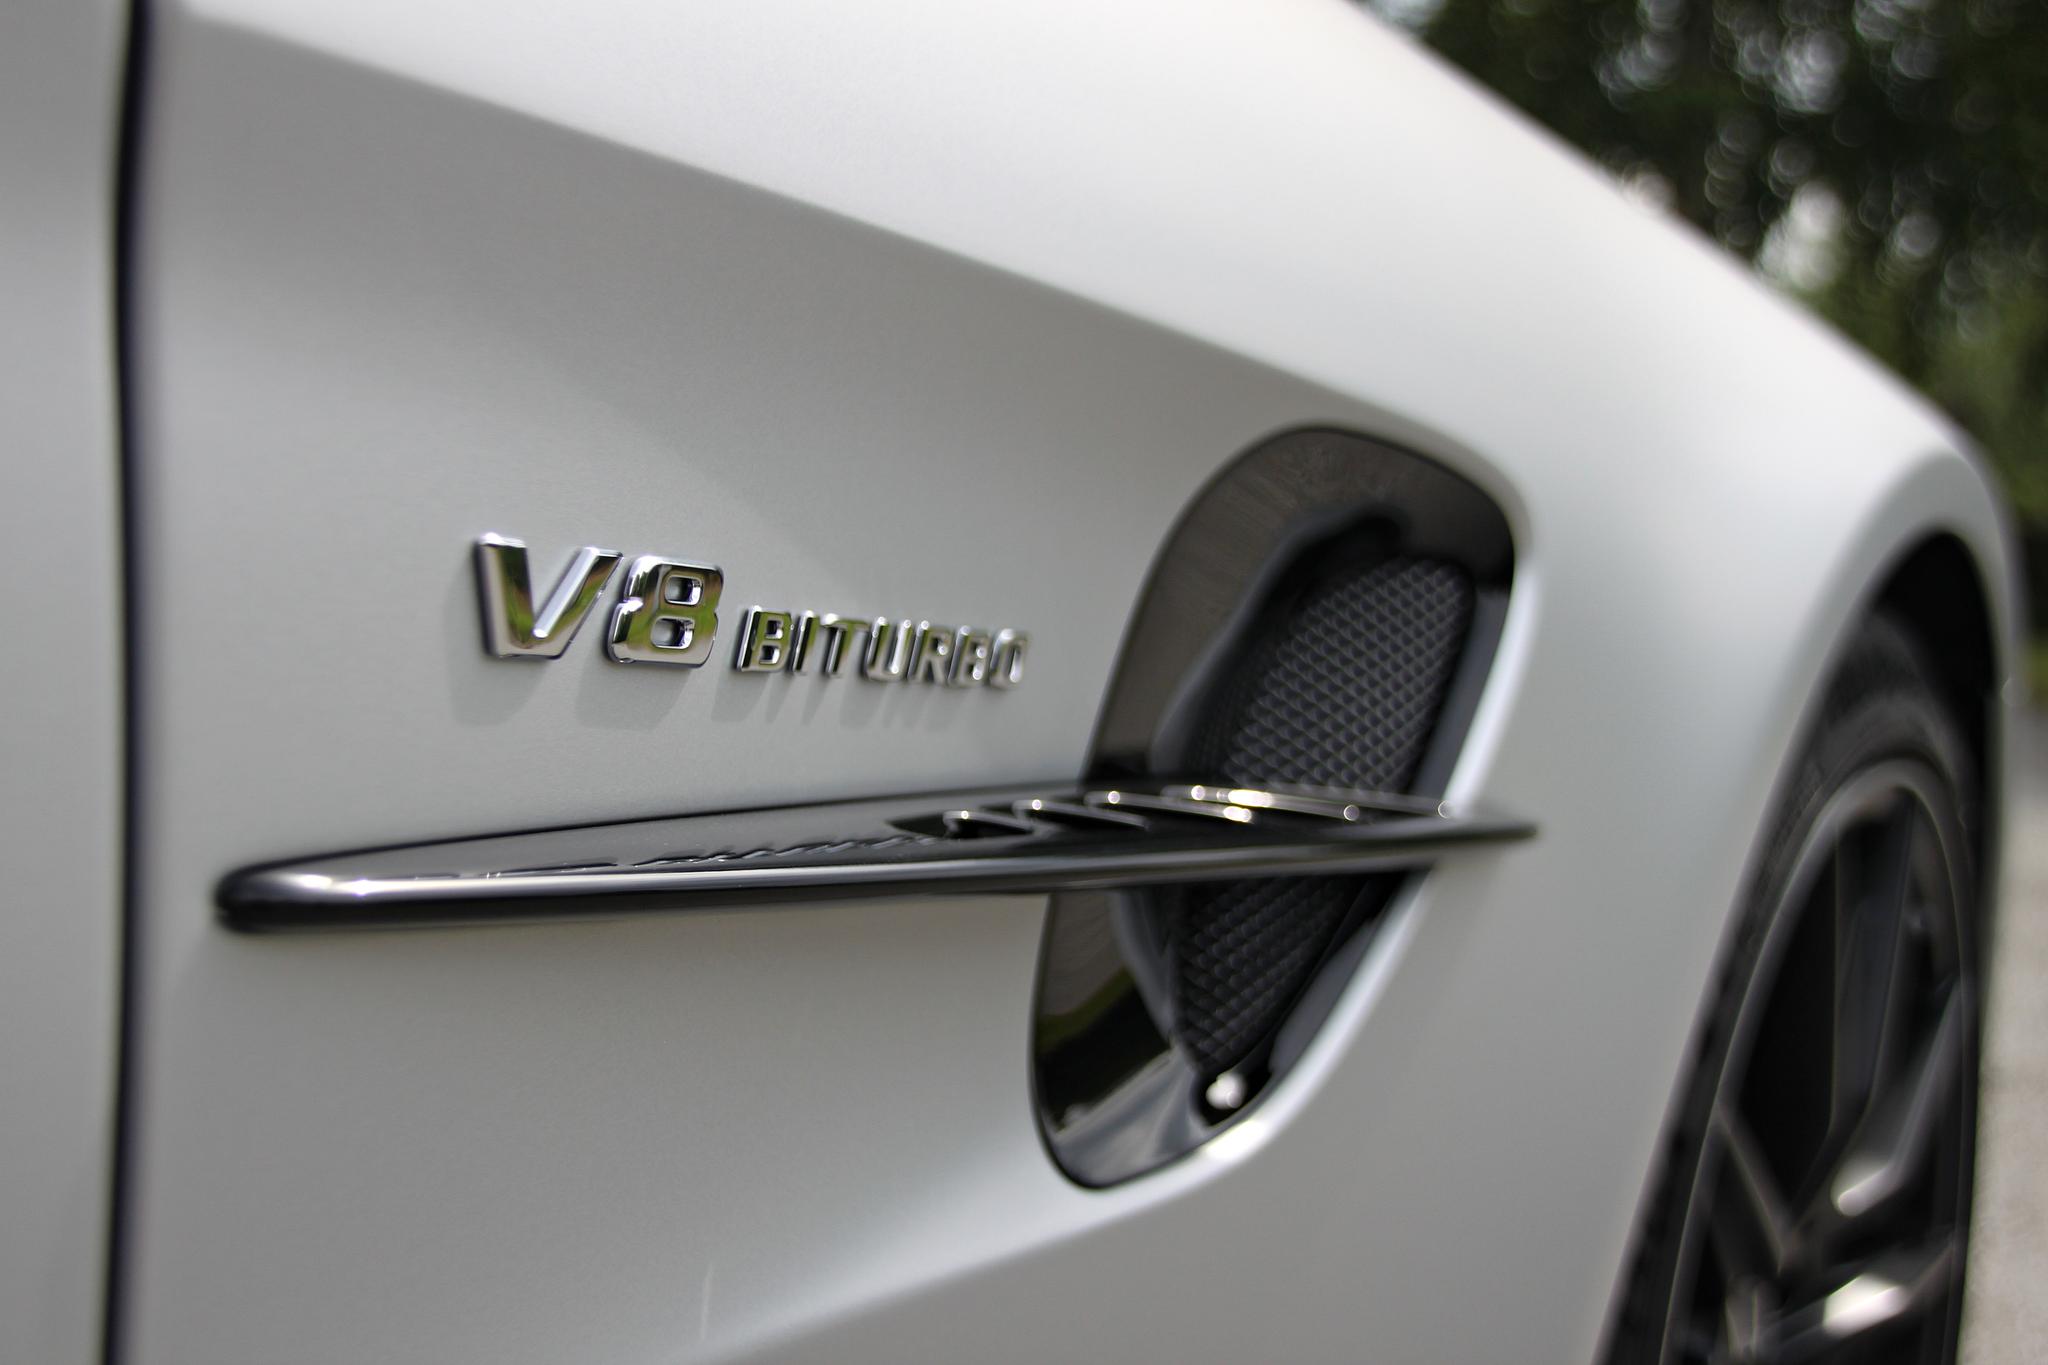  SELGER: Importøren sier de totalt har solgt 36 AMG GT i år, i fjor var det 10 stykker. De nye modellene GT C Roadster og GT R skal stå for rundt 80 prosent av salget. Foto: Morten Abrahamsen / NTB tema 